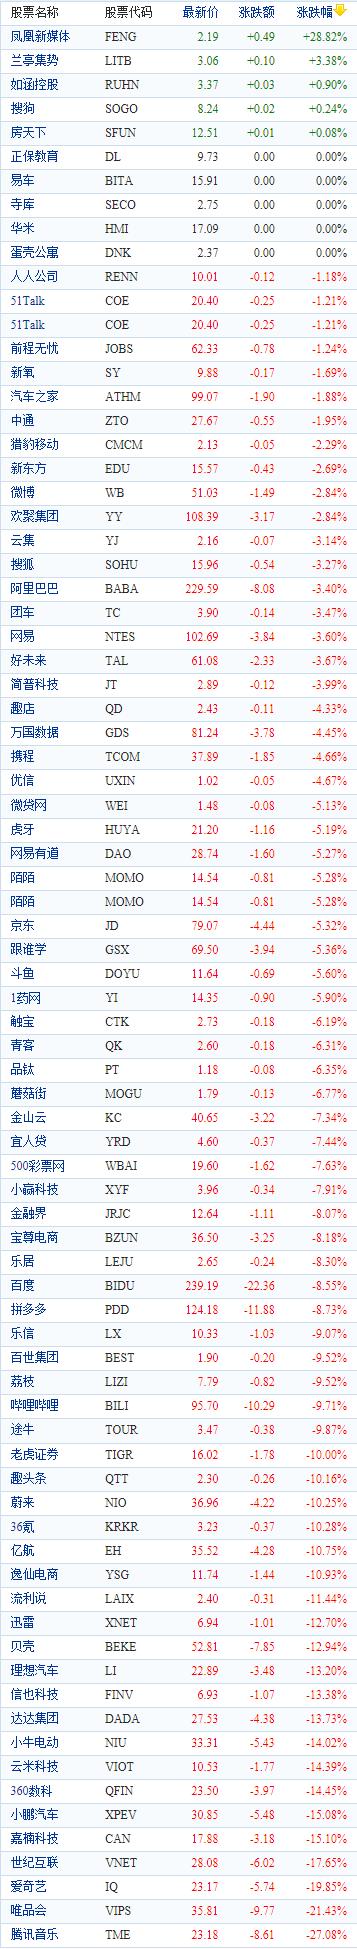 中国概念股周三收盘走低 音视频、电商股重挫腾讯音乐跌逾27%